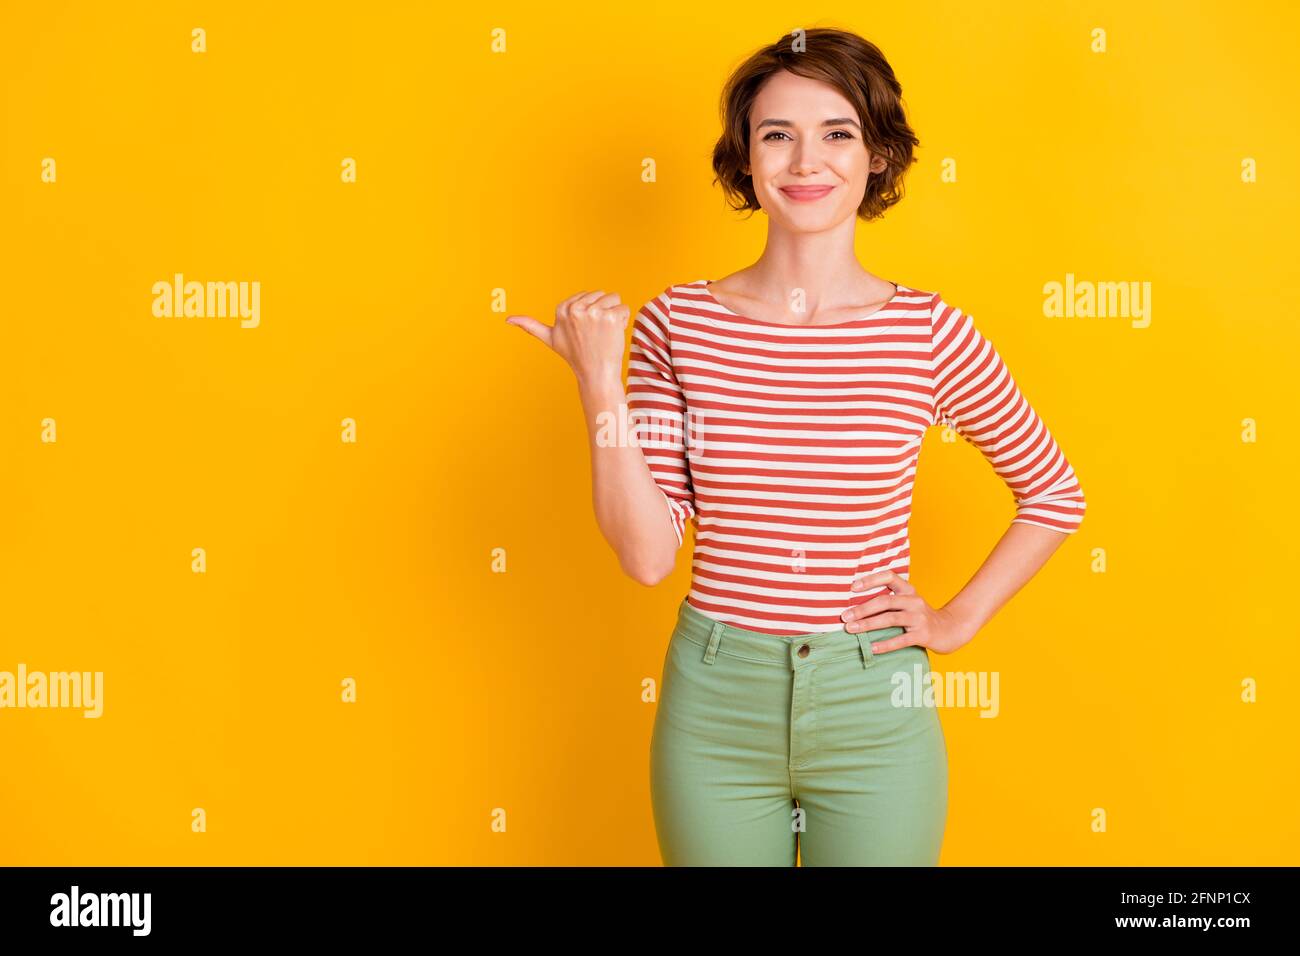 Portrait Foto von Mädchen mit bob Haar zeigt auf leer Space lächelnd isoliert auf lebhaft gelben Hintergrund Stockfoto